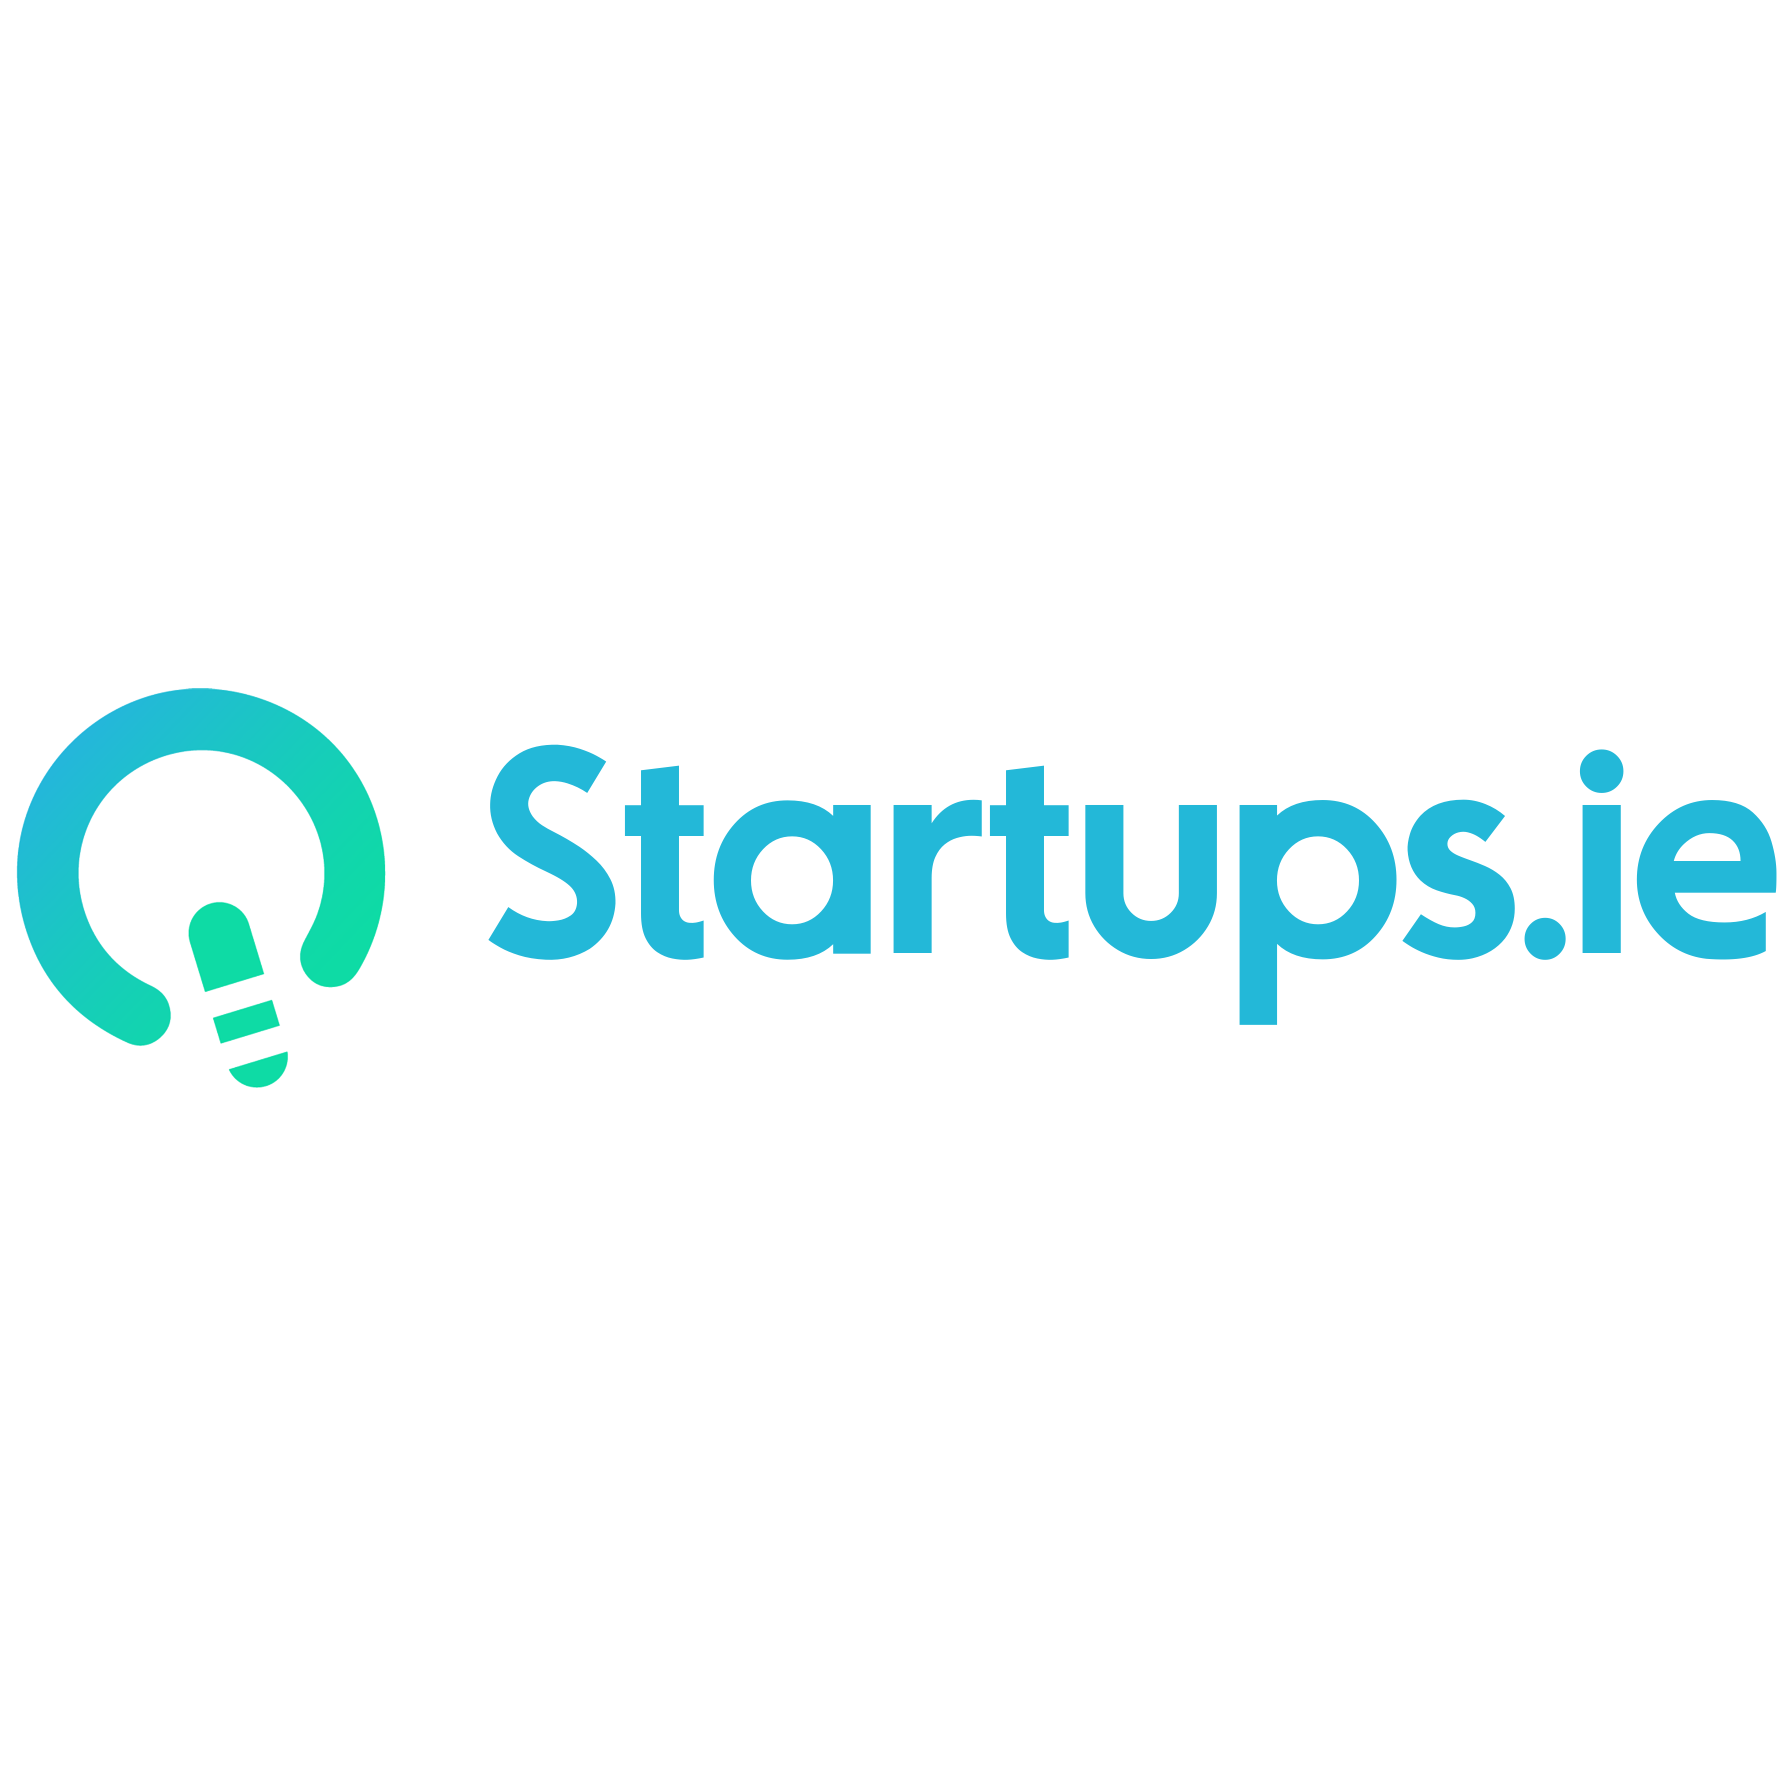 Startups.ie